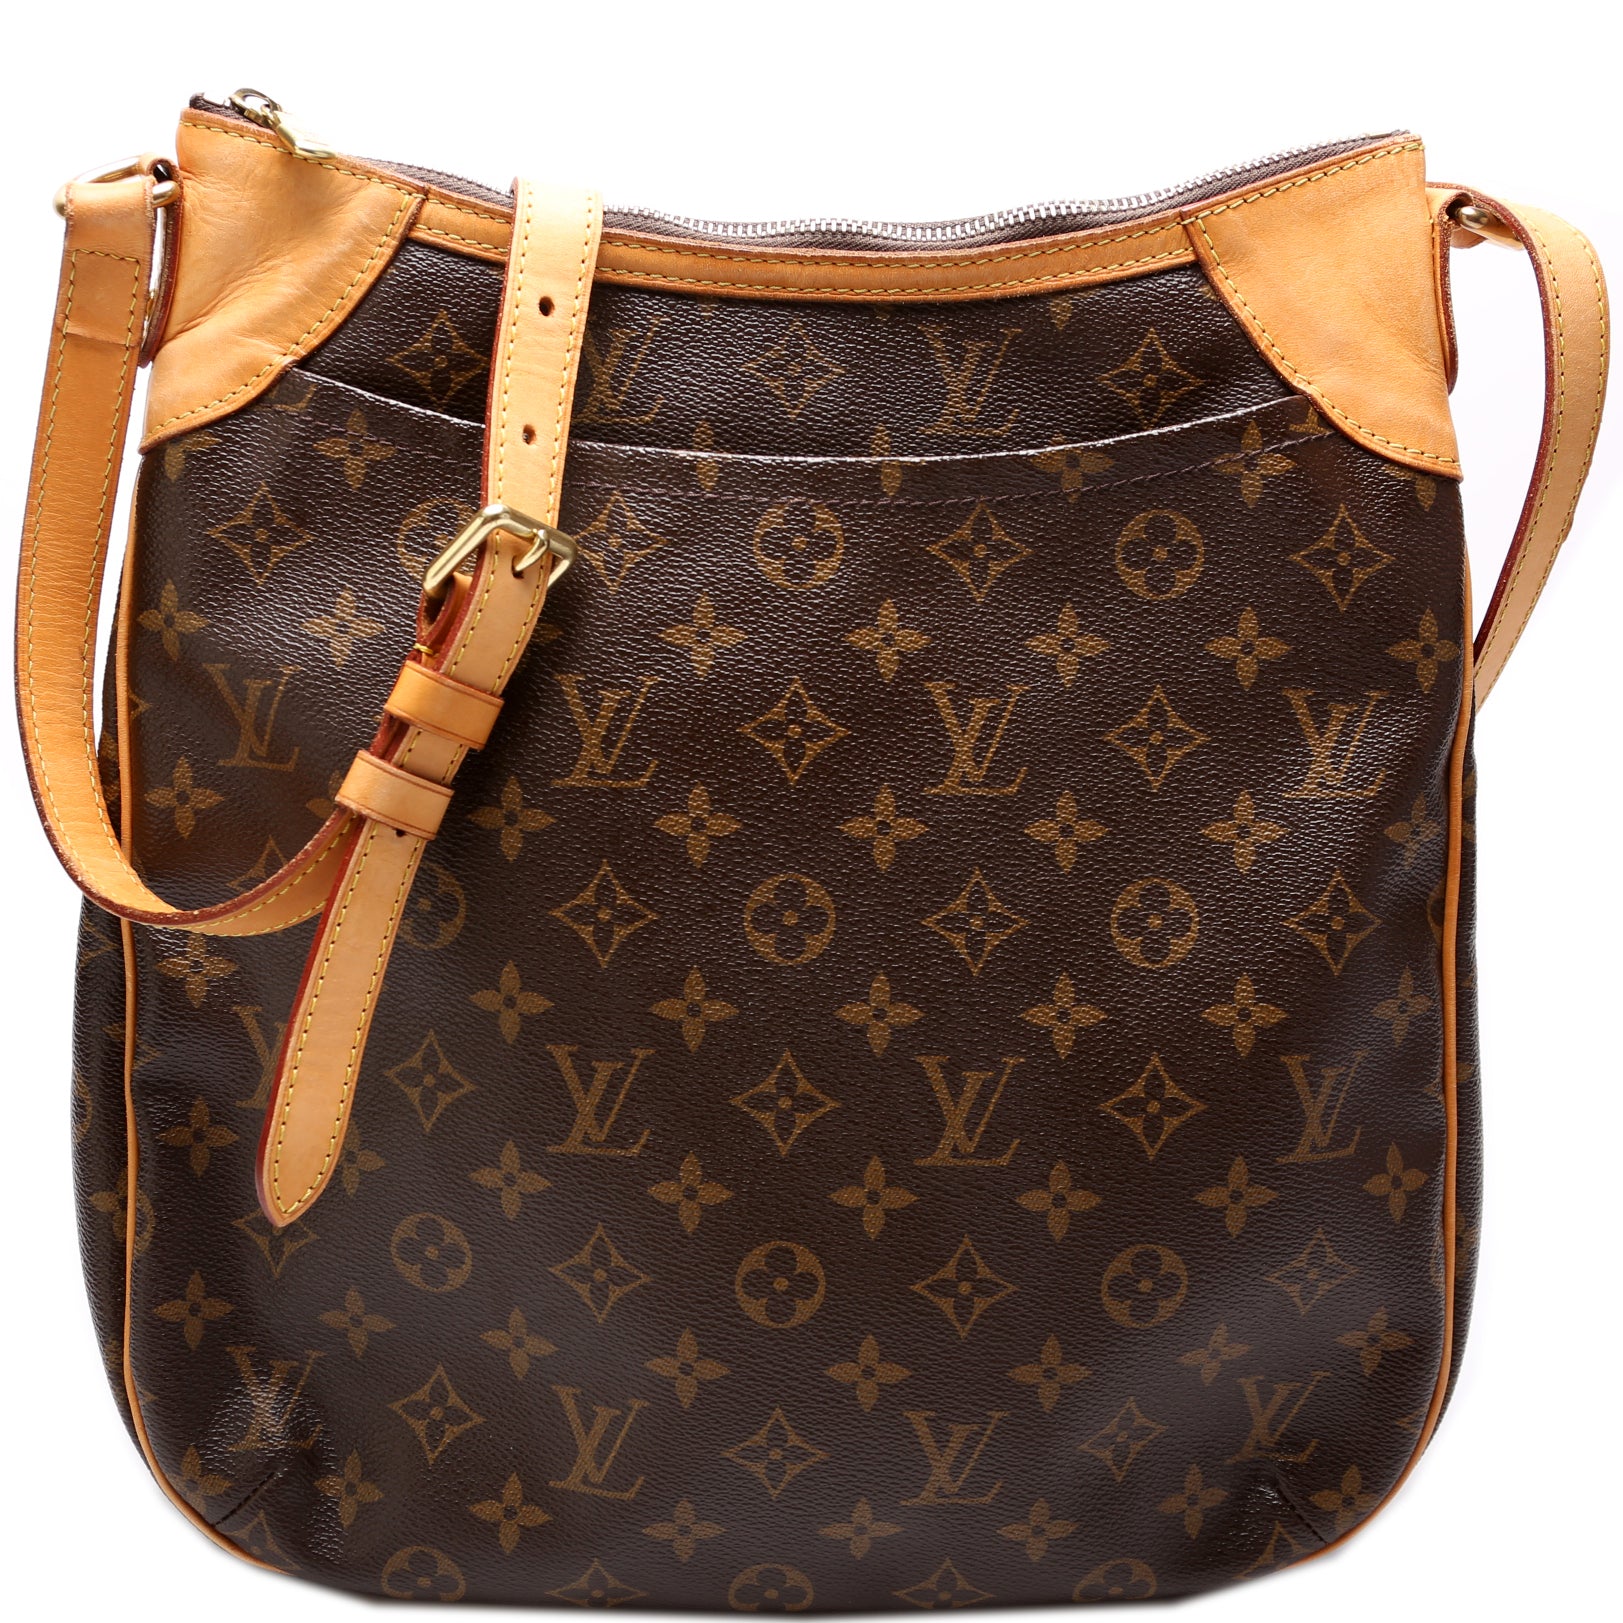 Shop for Louis Vuitton Monogram Canvas Leather e Crossbody